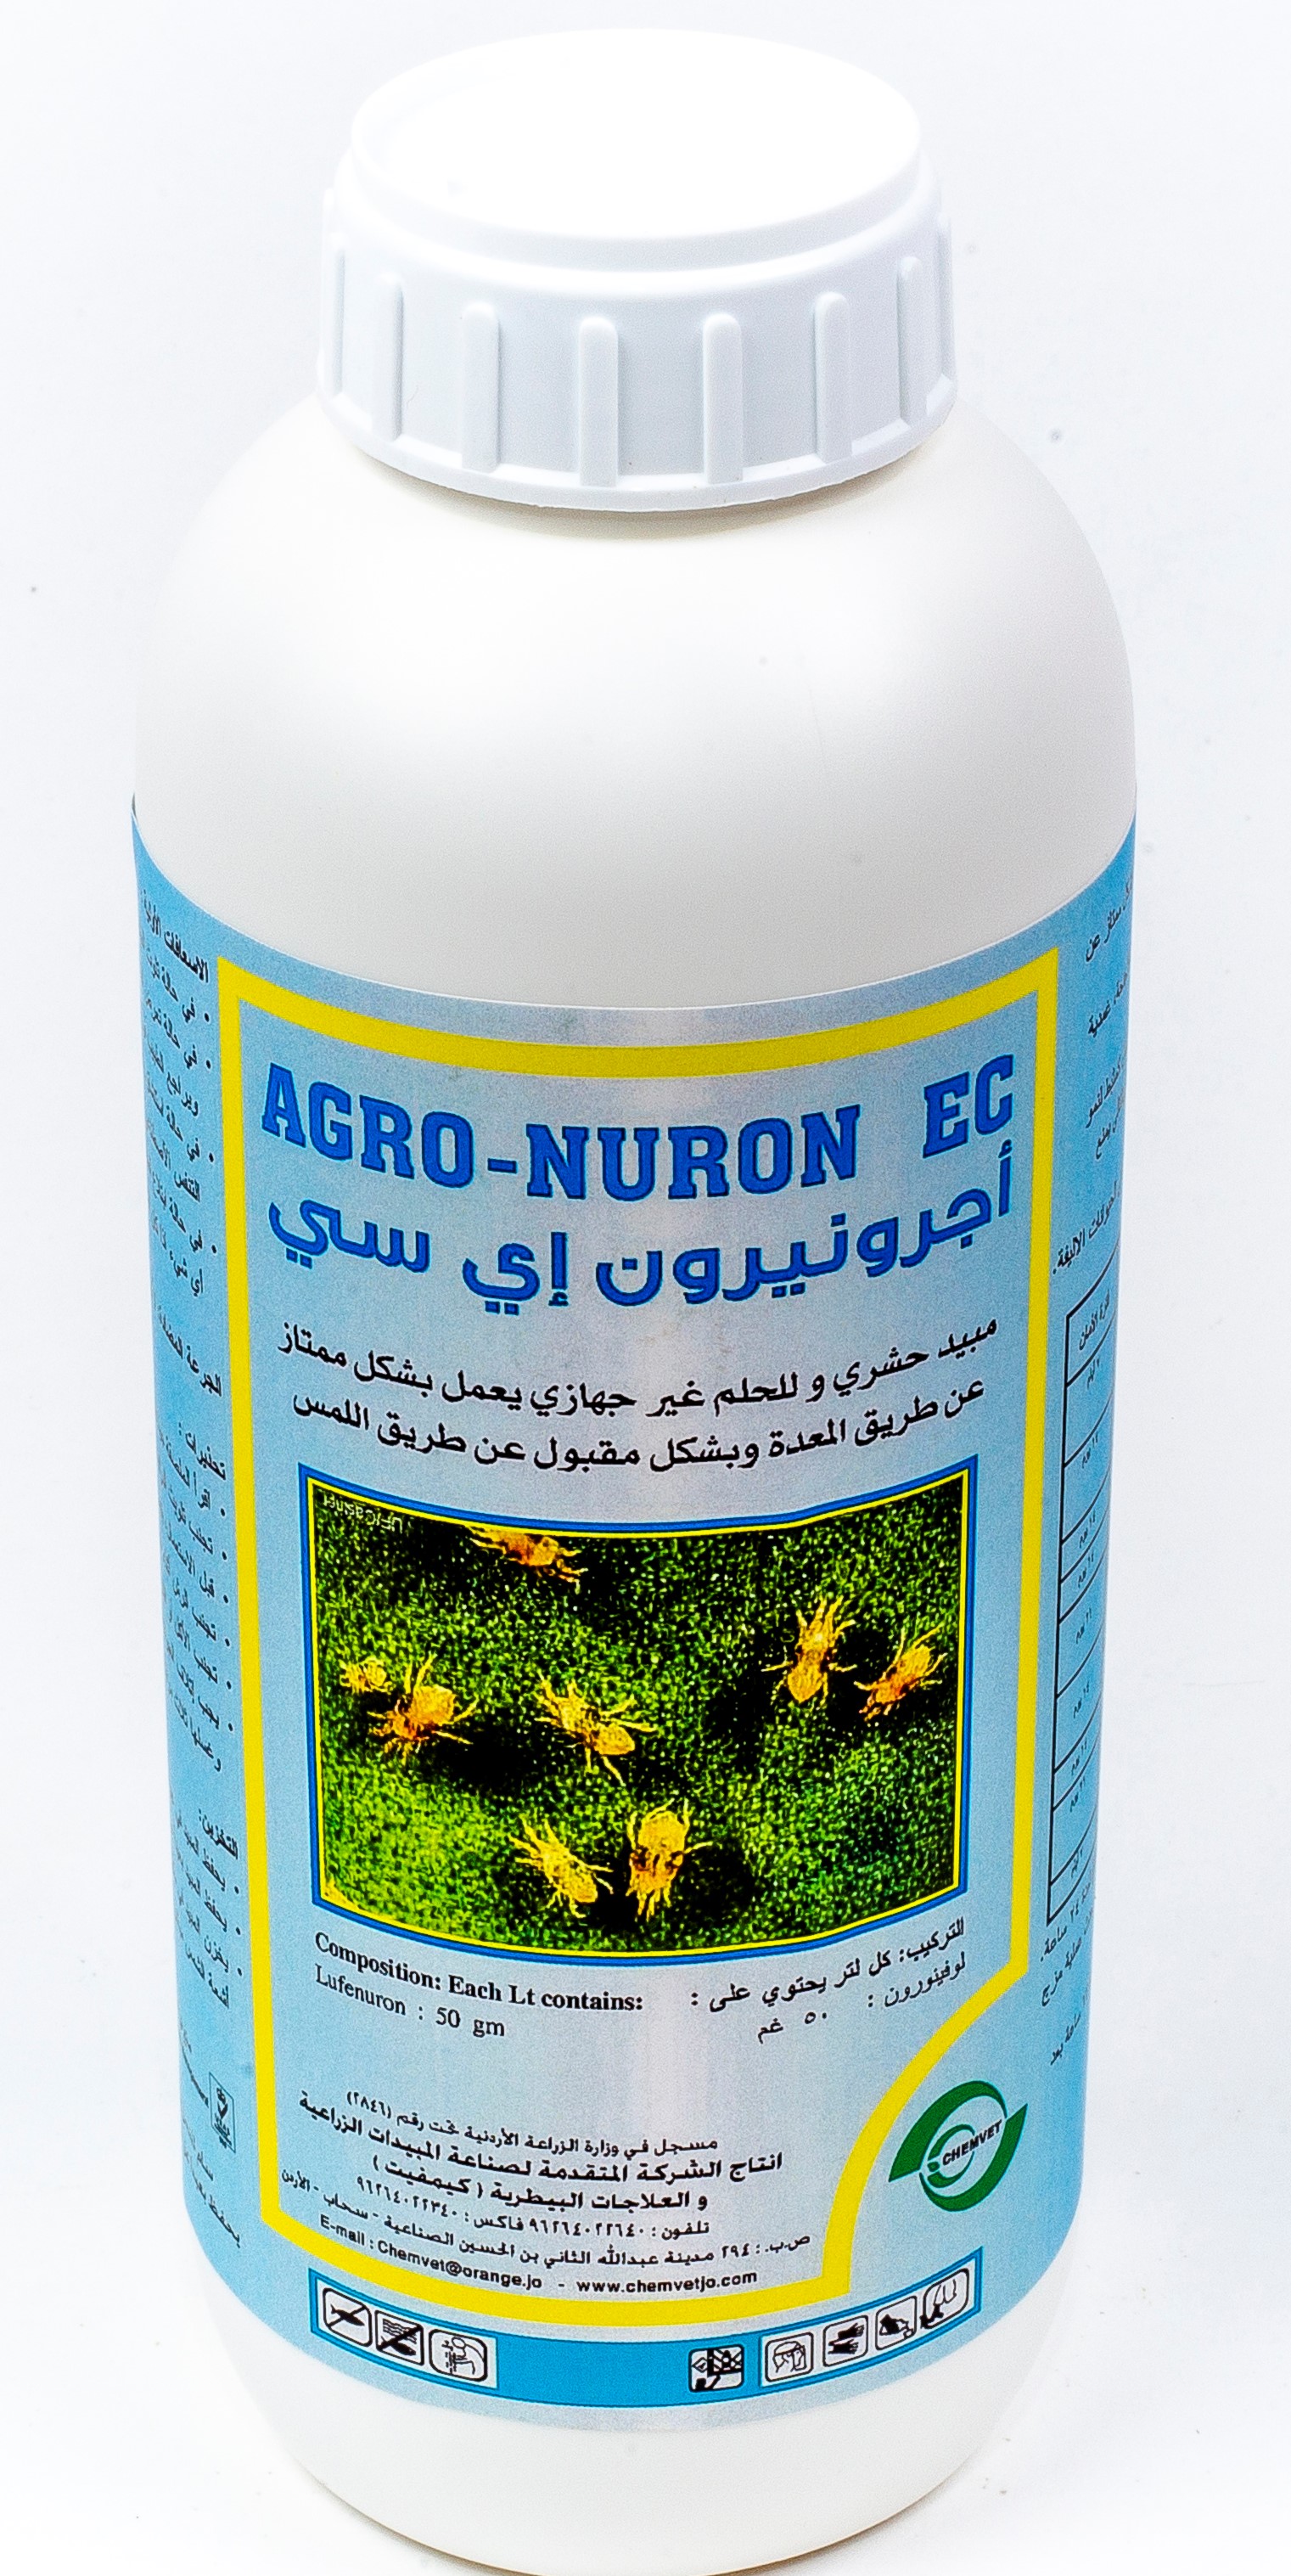 Agro-nuron